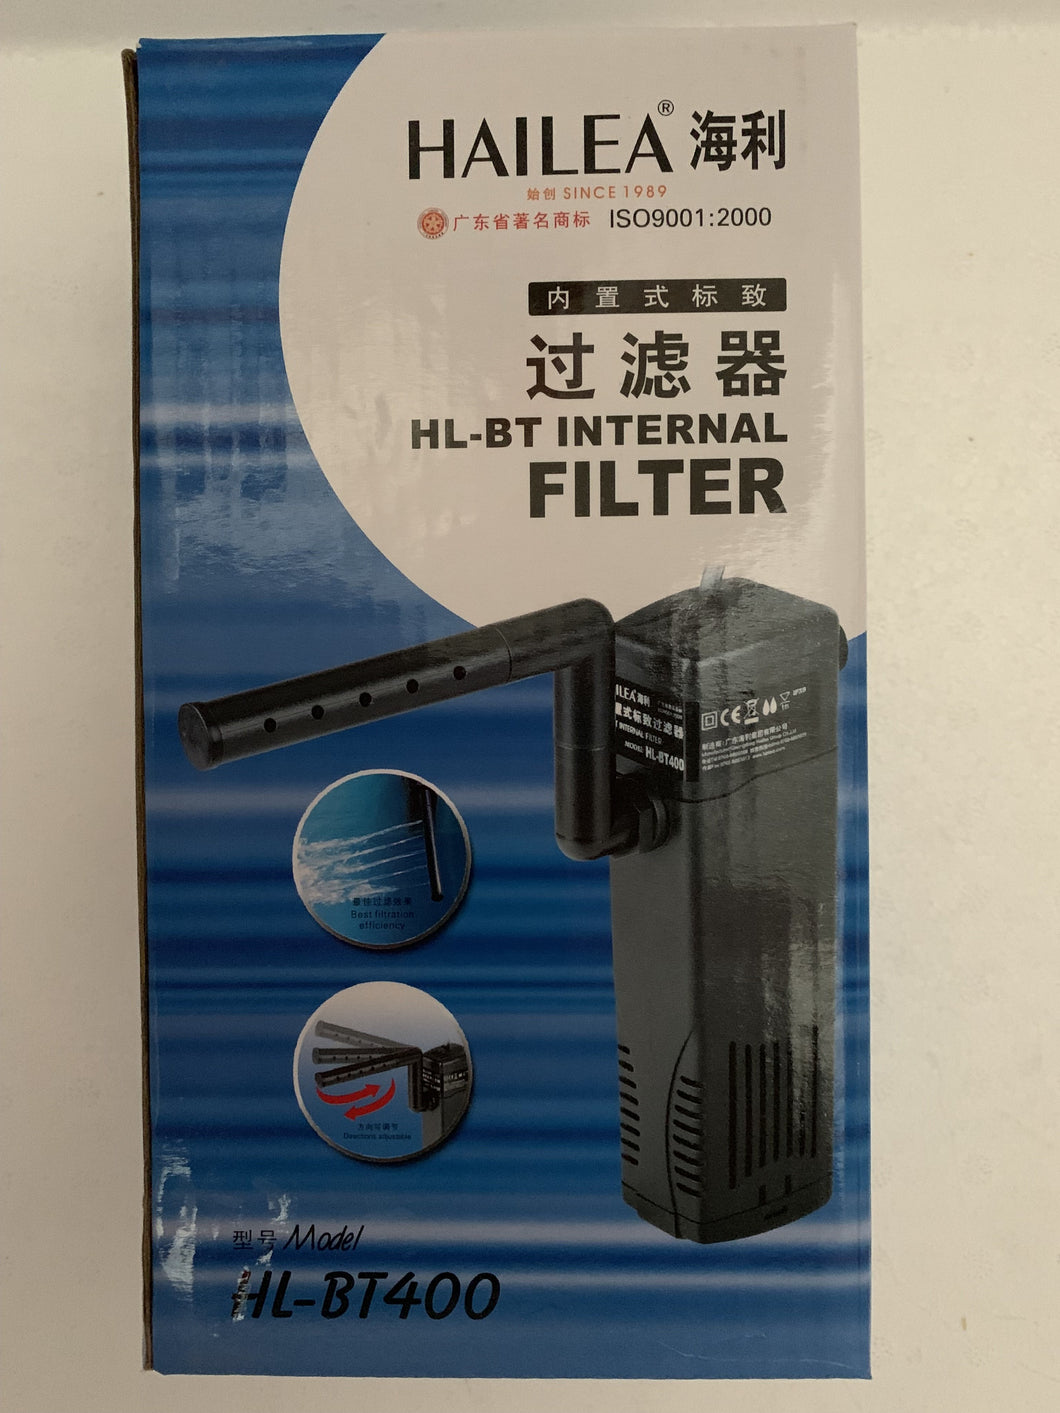 Hailea Filter Bt400